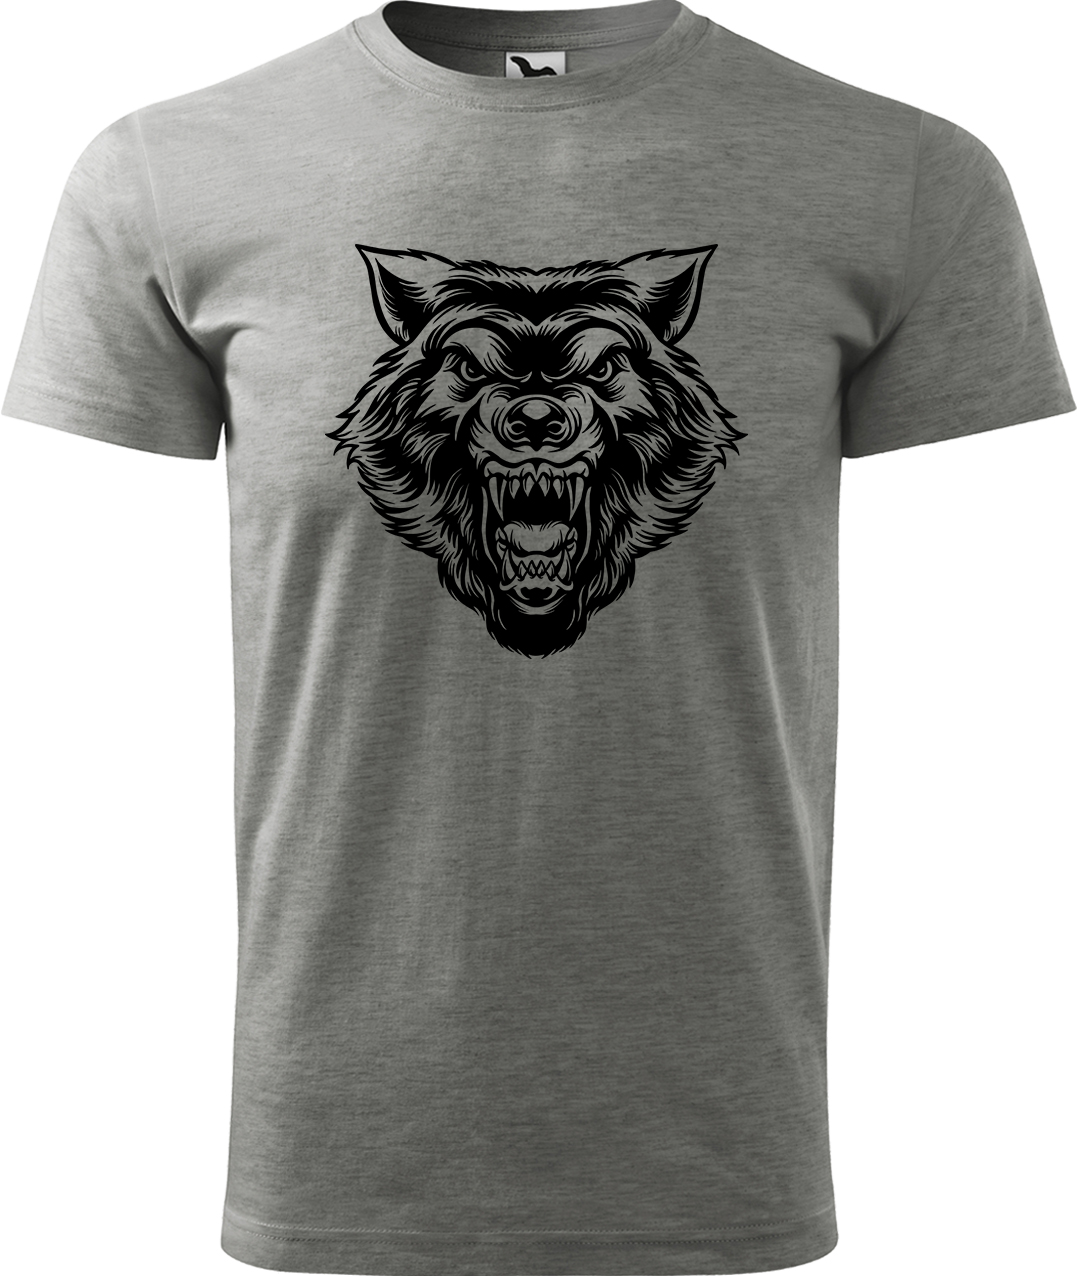 Pánské tričko s vlkem - Rozzuřený vlk Velikost: M, Barva: Tmavě šedý melír (12), Střih: pánský